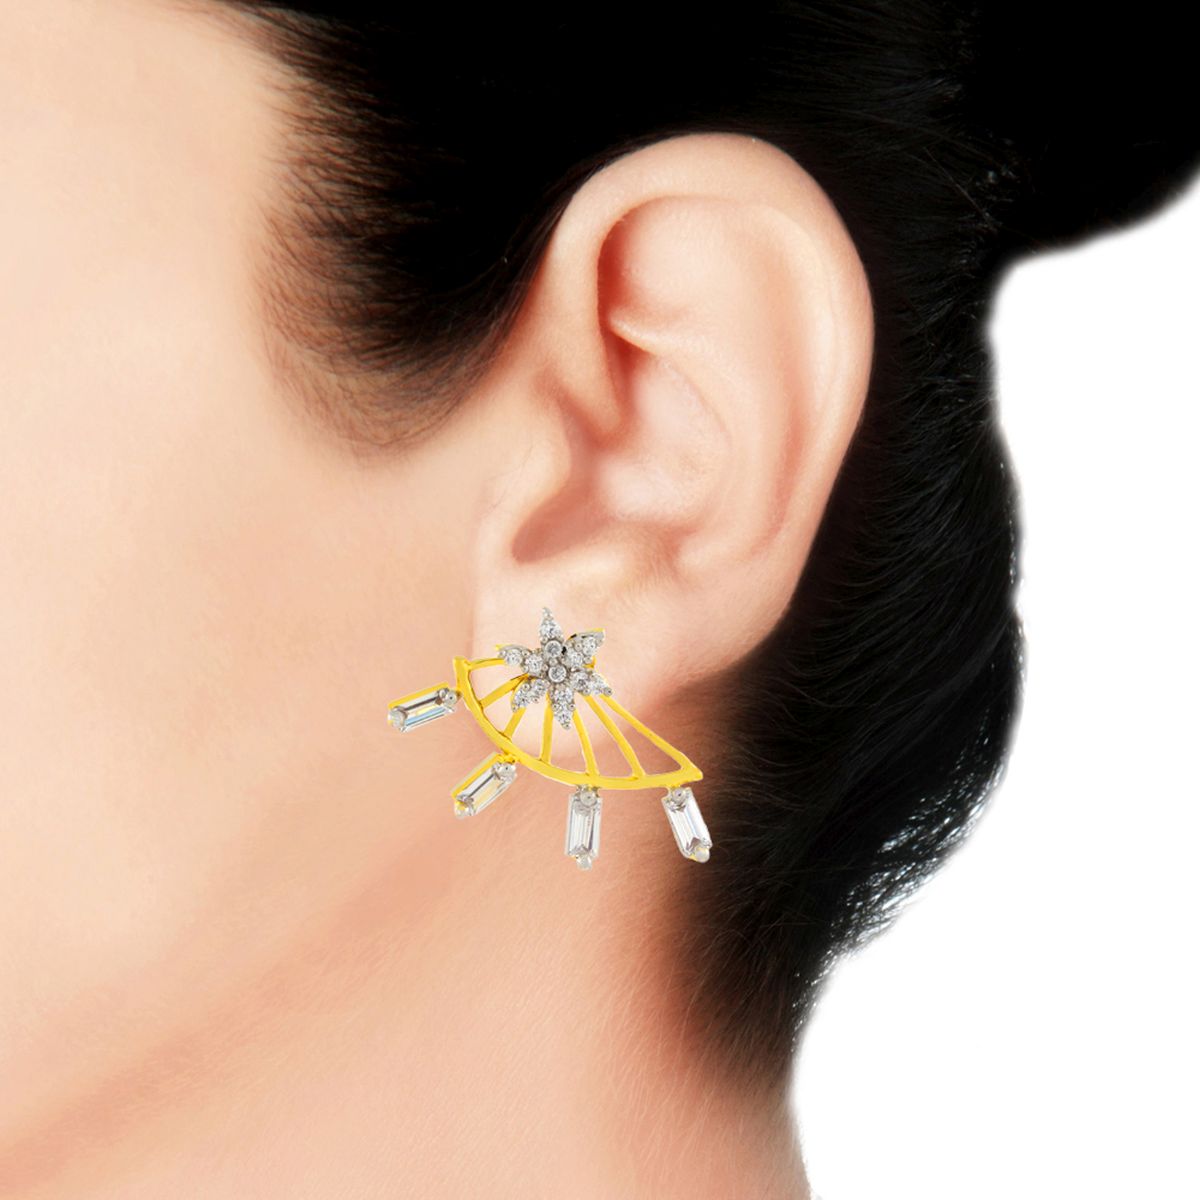 Flower American Diamond Cz Gold Ear Cuff Jacket Earring For Women